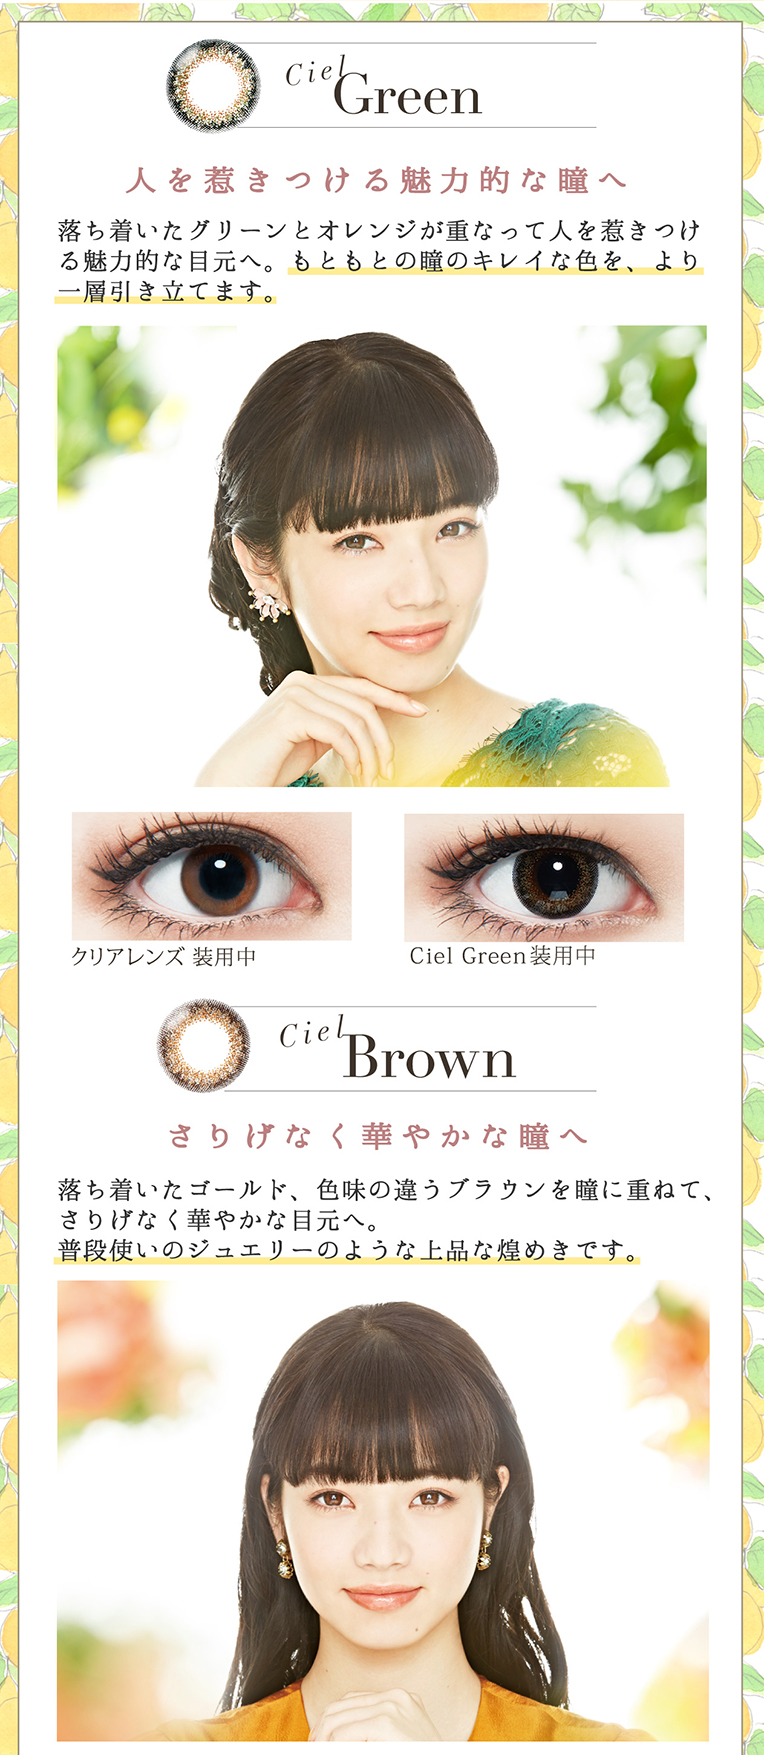 Ciel Green:落ちついたグリーンとオレンジが重なって人を惹きつける魅力的な目元へ。Ciel brown:落ちついたゴールド、色味の違うブラウンを瞳に重ねて、さりげなく華やかな目元へ。